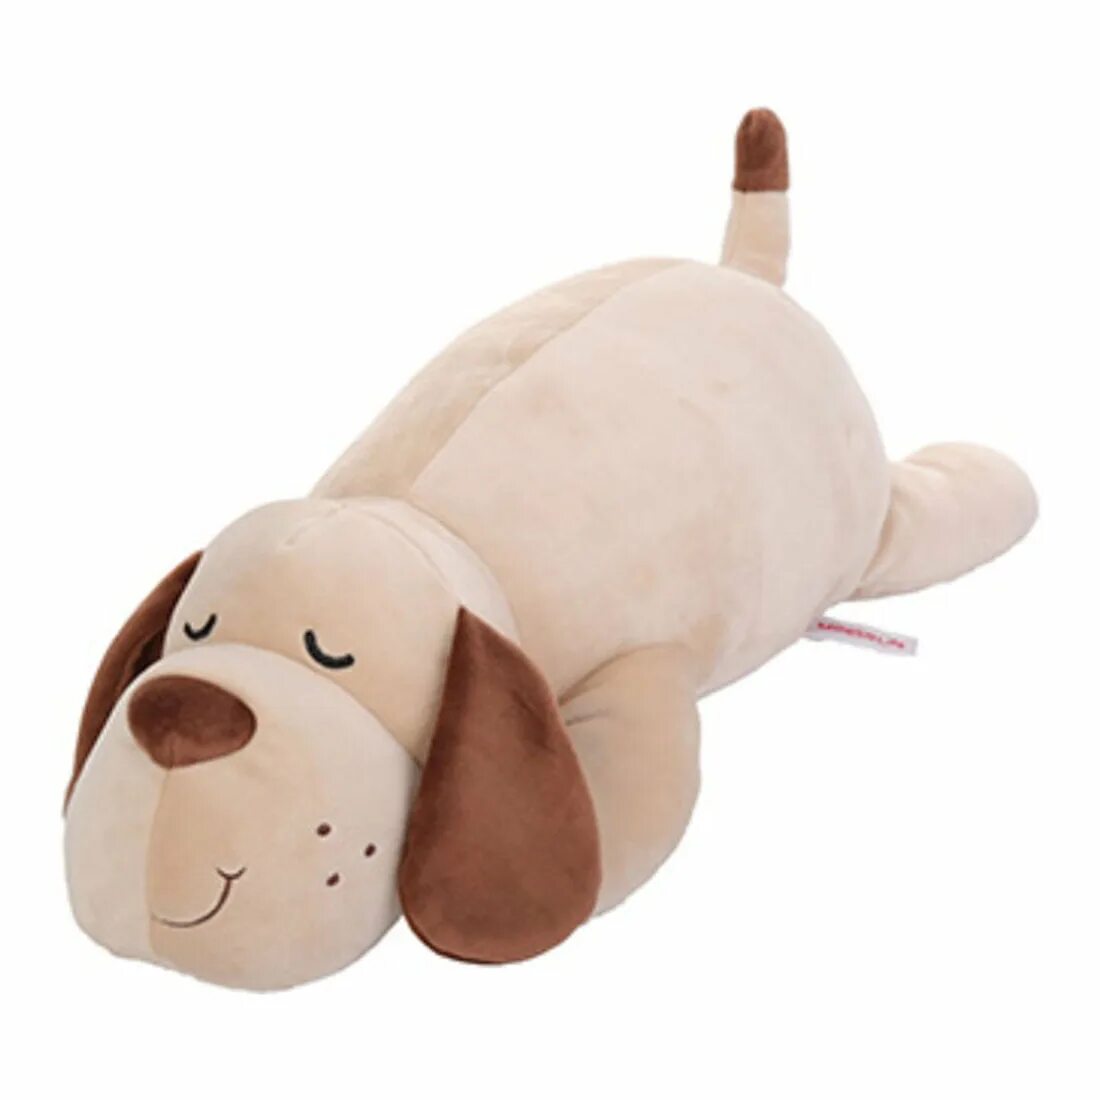 Дог плюшева. Miniso игрушки. Собака Miniso. Eggdog игрушка плюшевая. Sleeping Brown Puppy Dog игрушка Miniso.